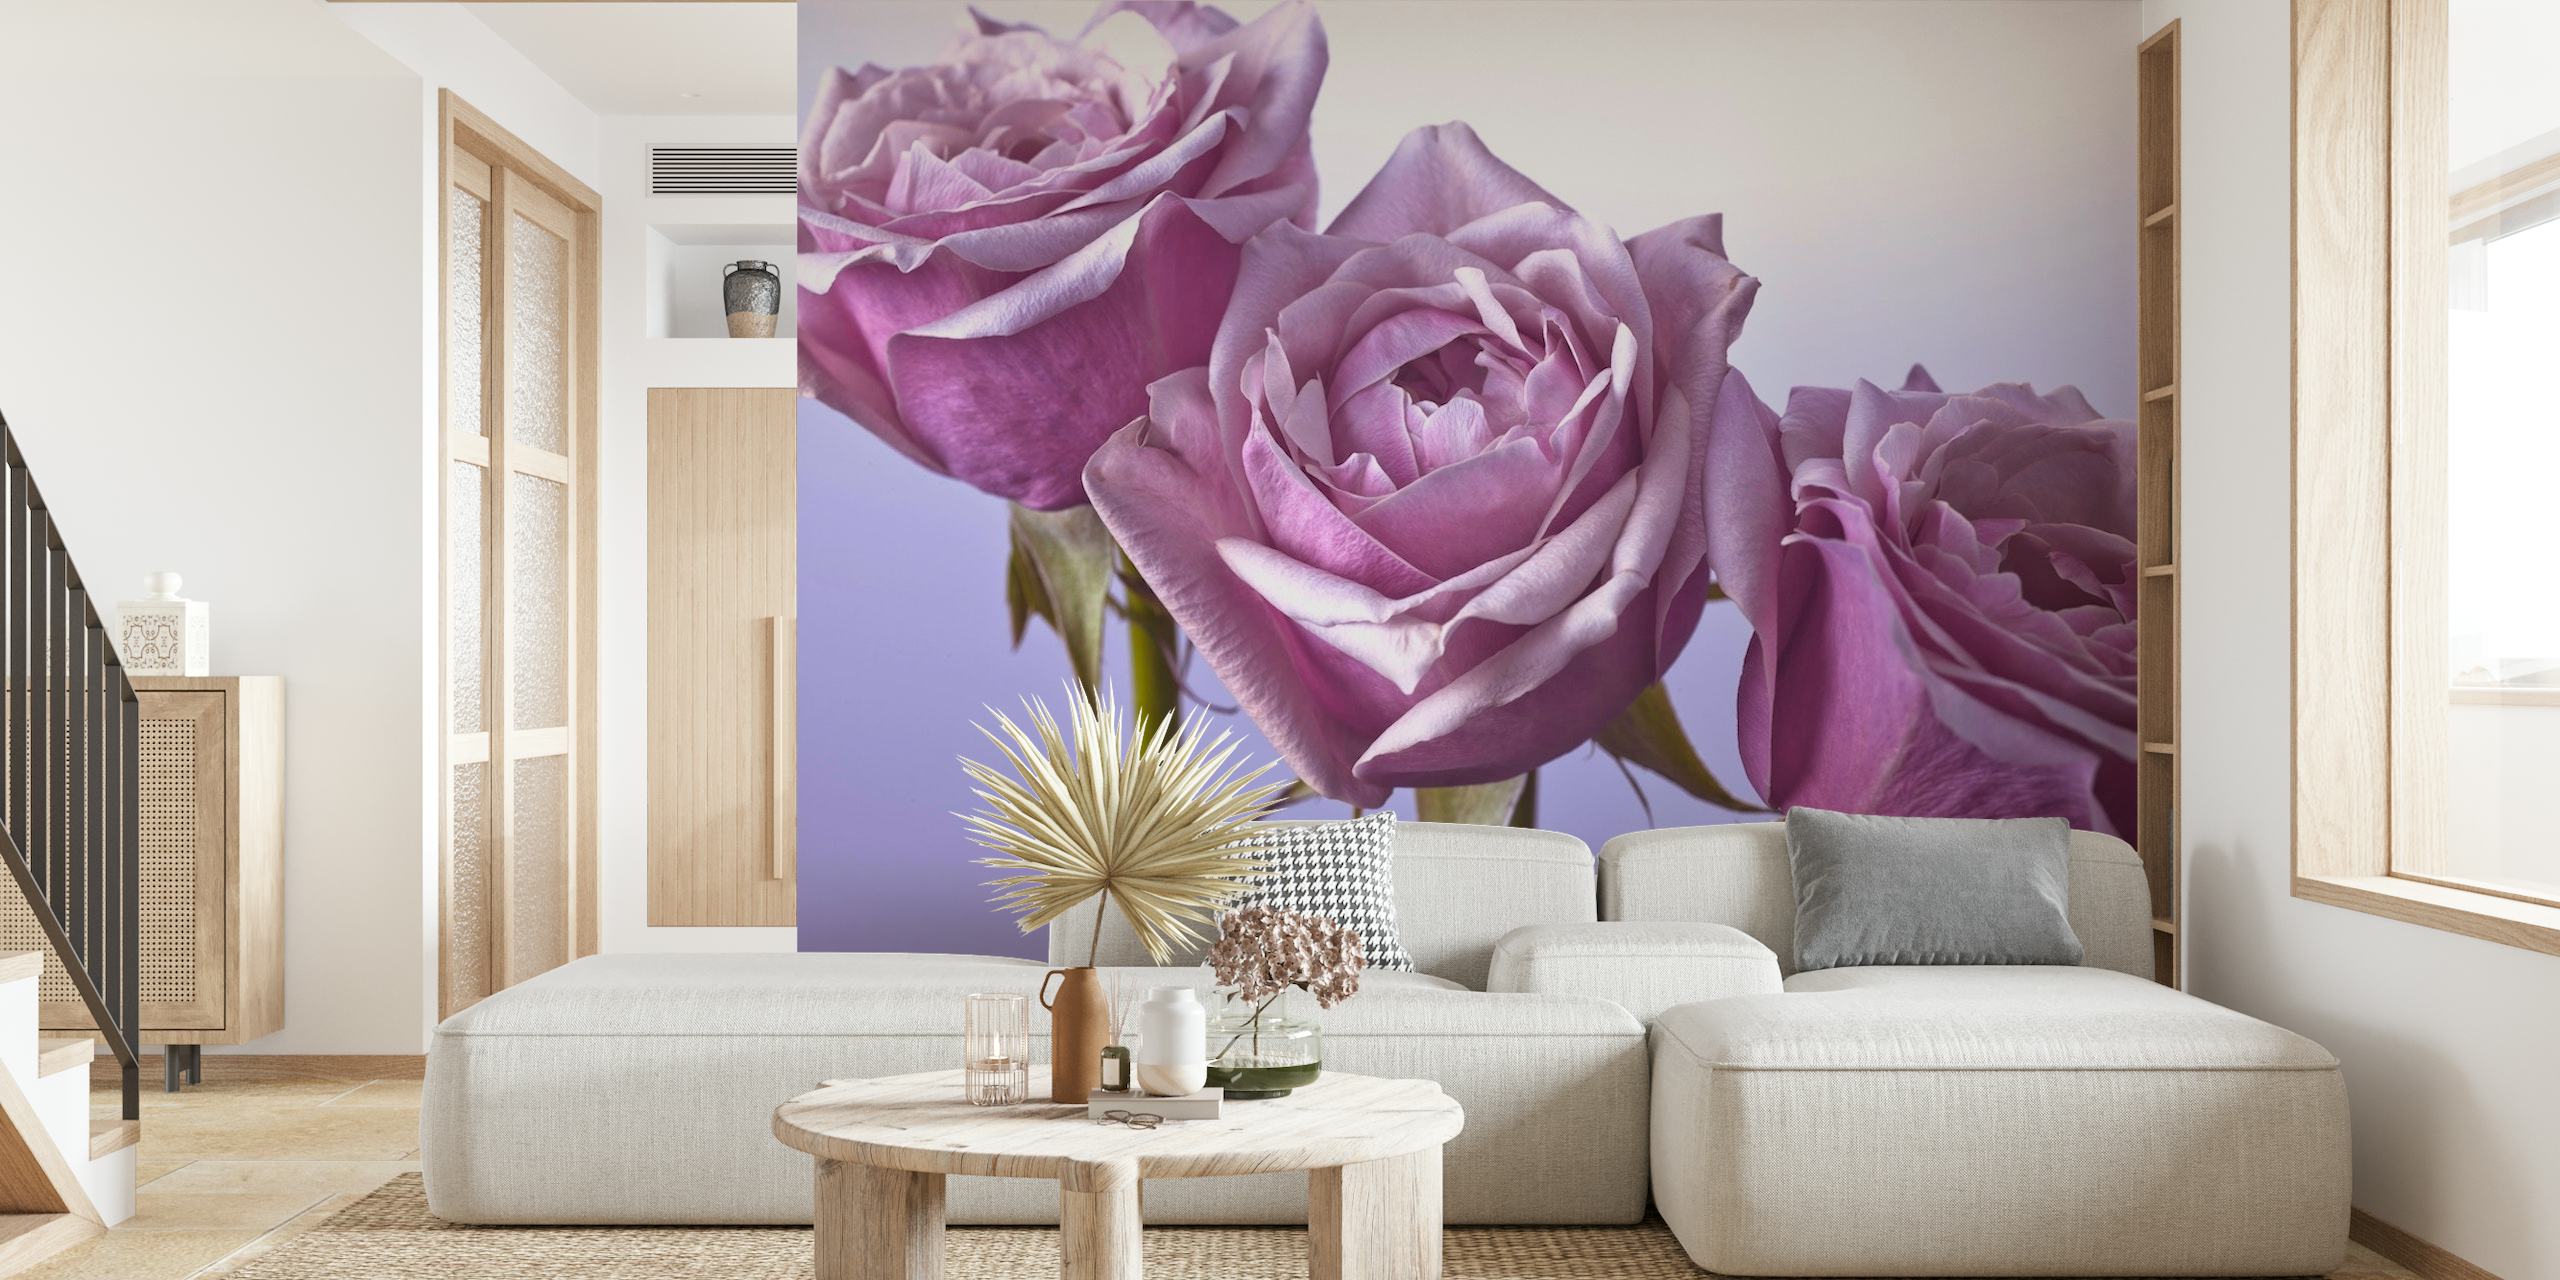 Szczegółowa fototapeta przedstawiająca trzy fioletowe róże na miękkim tle